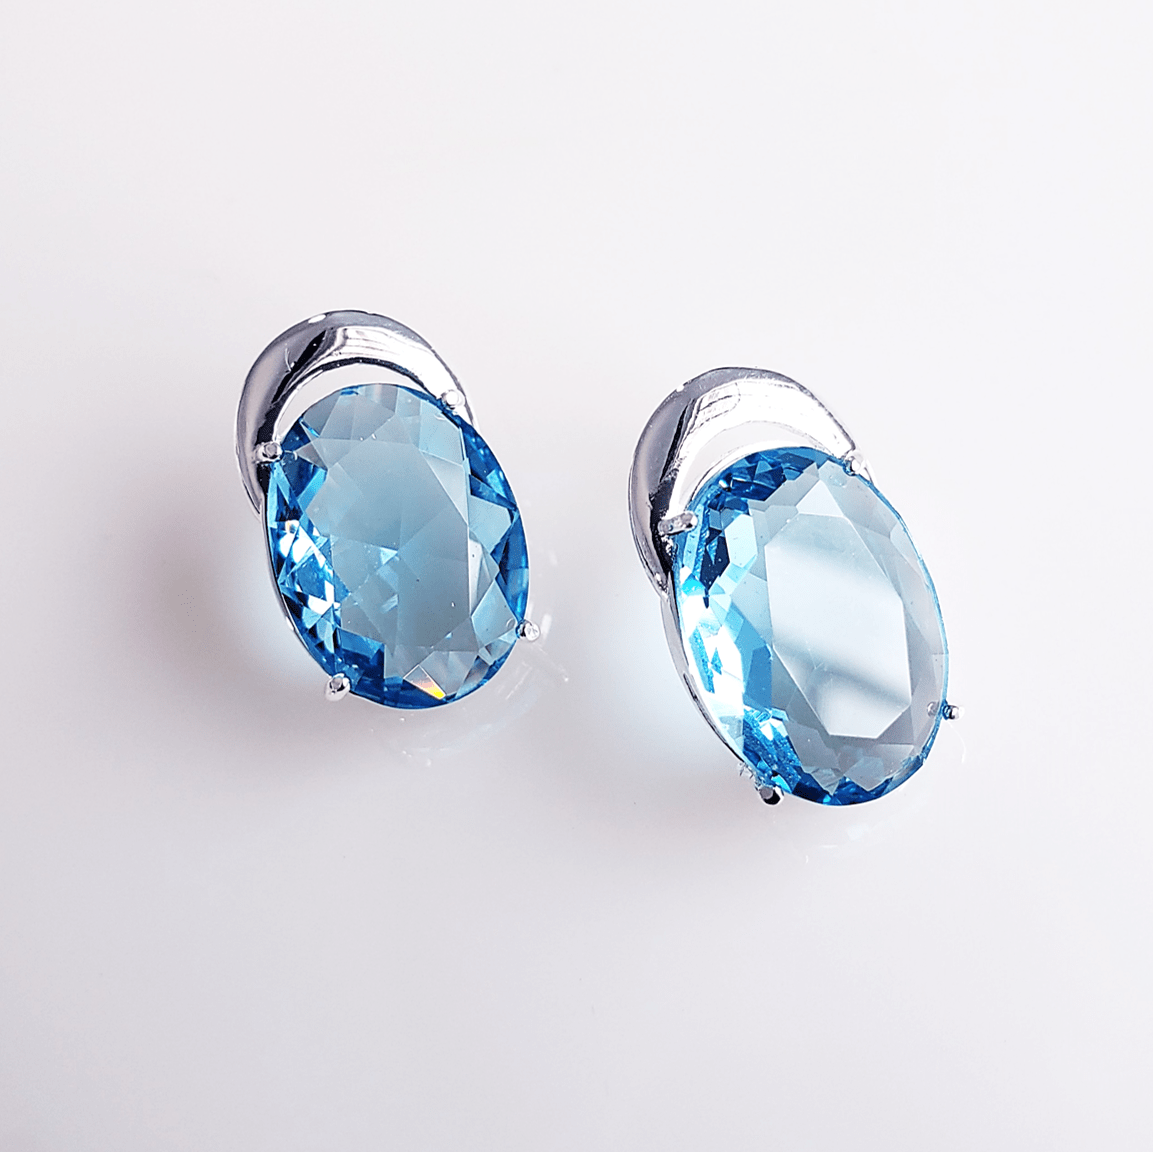 *Brinco de cristal azul aquamarine 2 - banhado a prata   